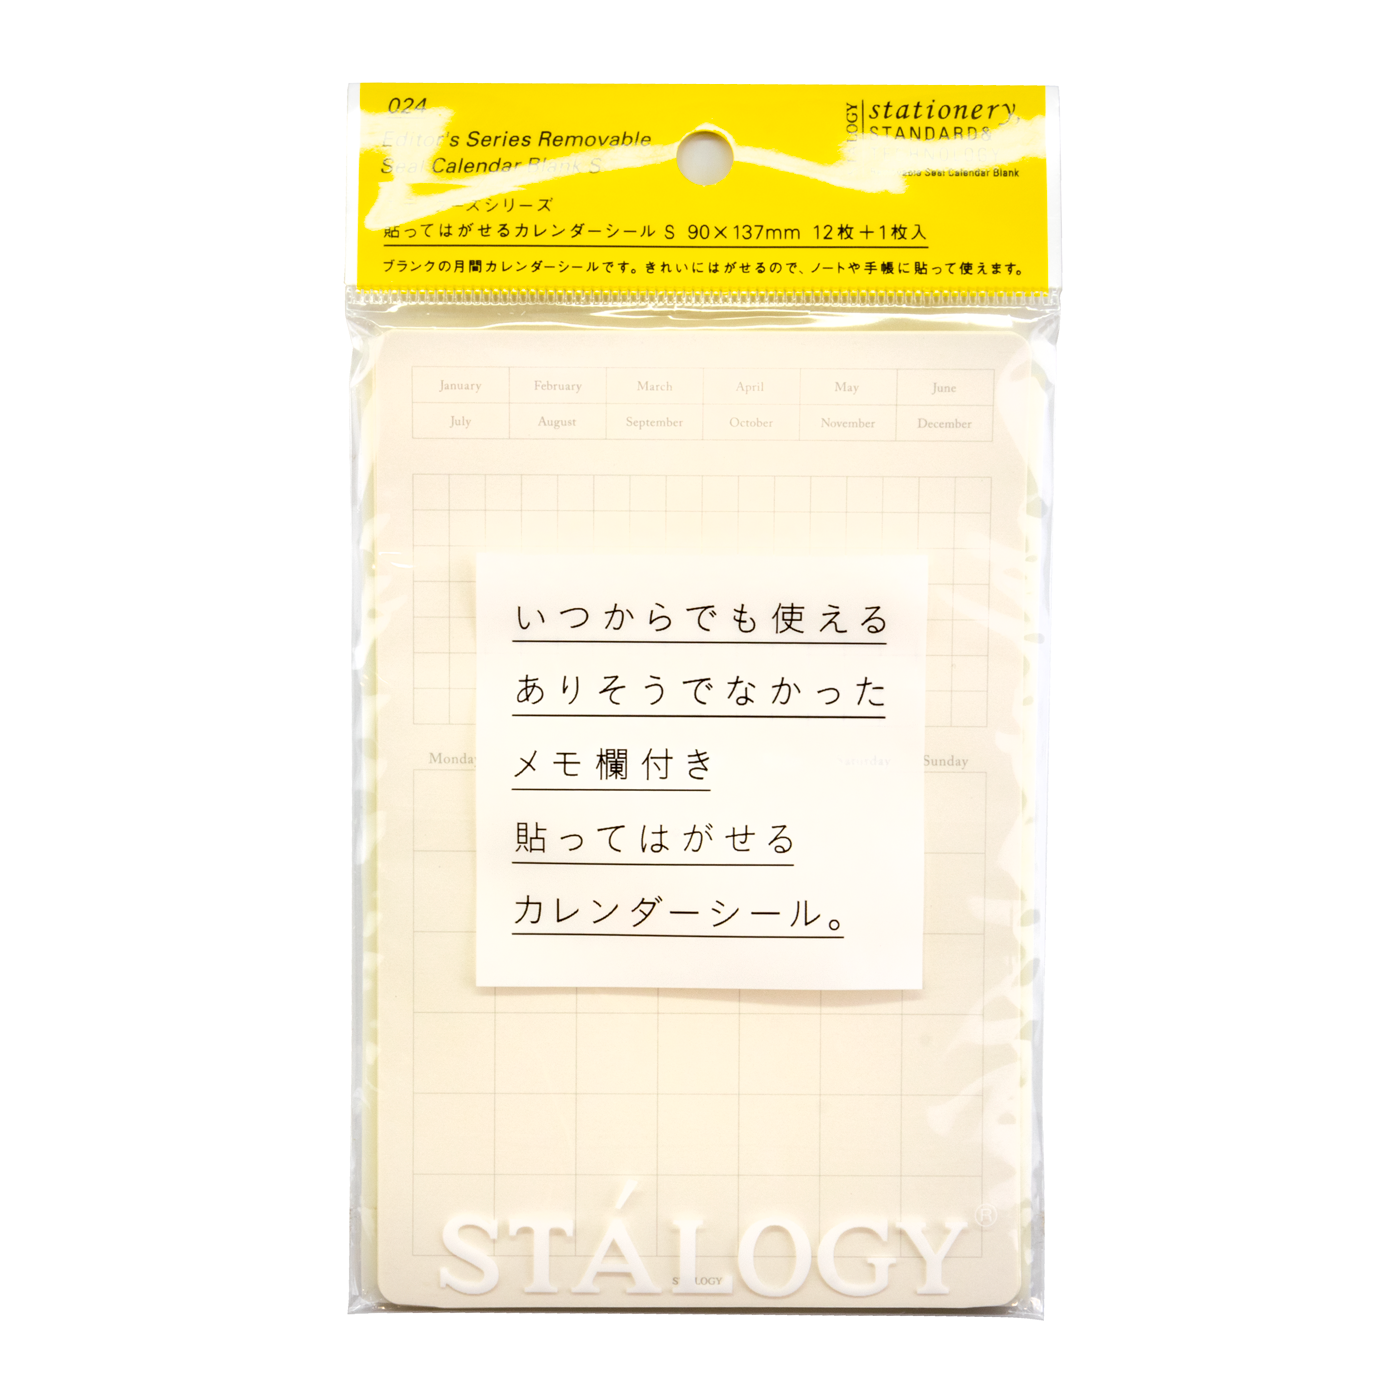 Stalogy Large Translucent Sticky Note Grid